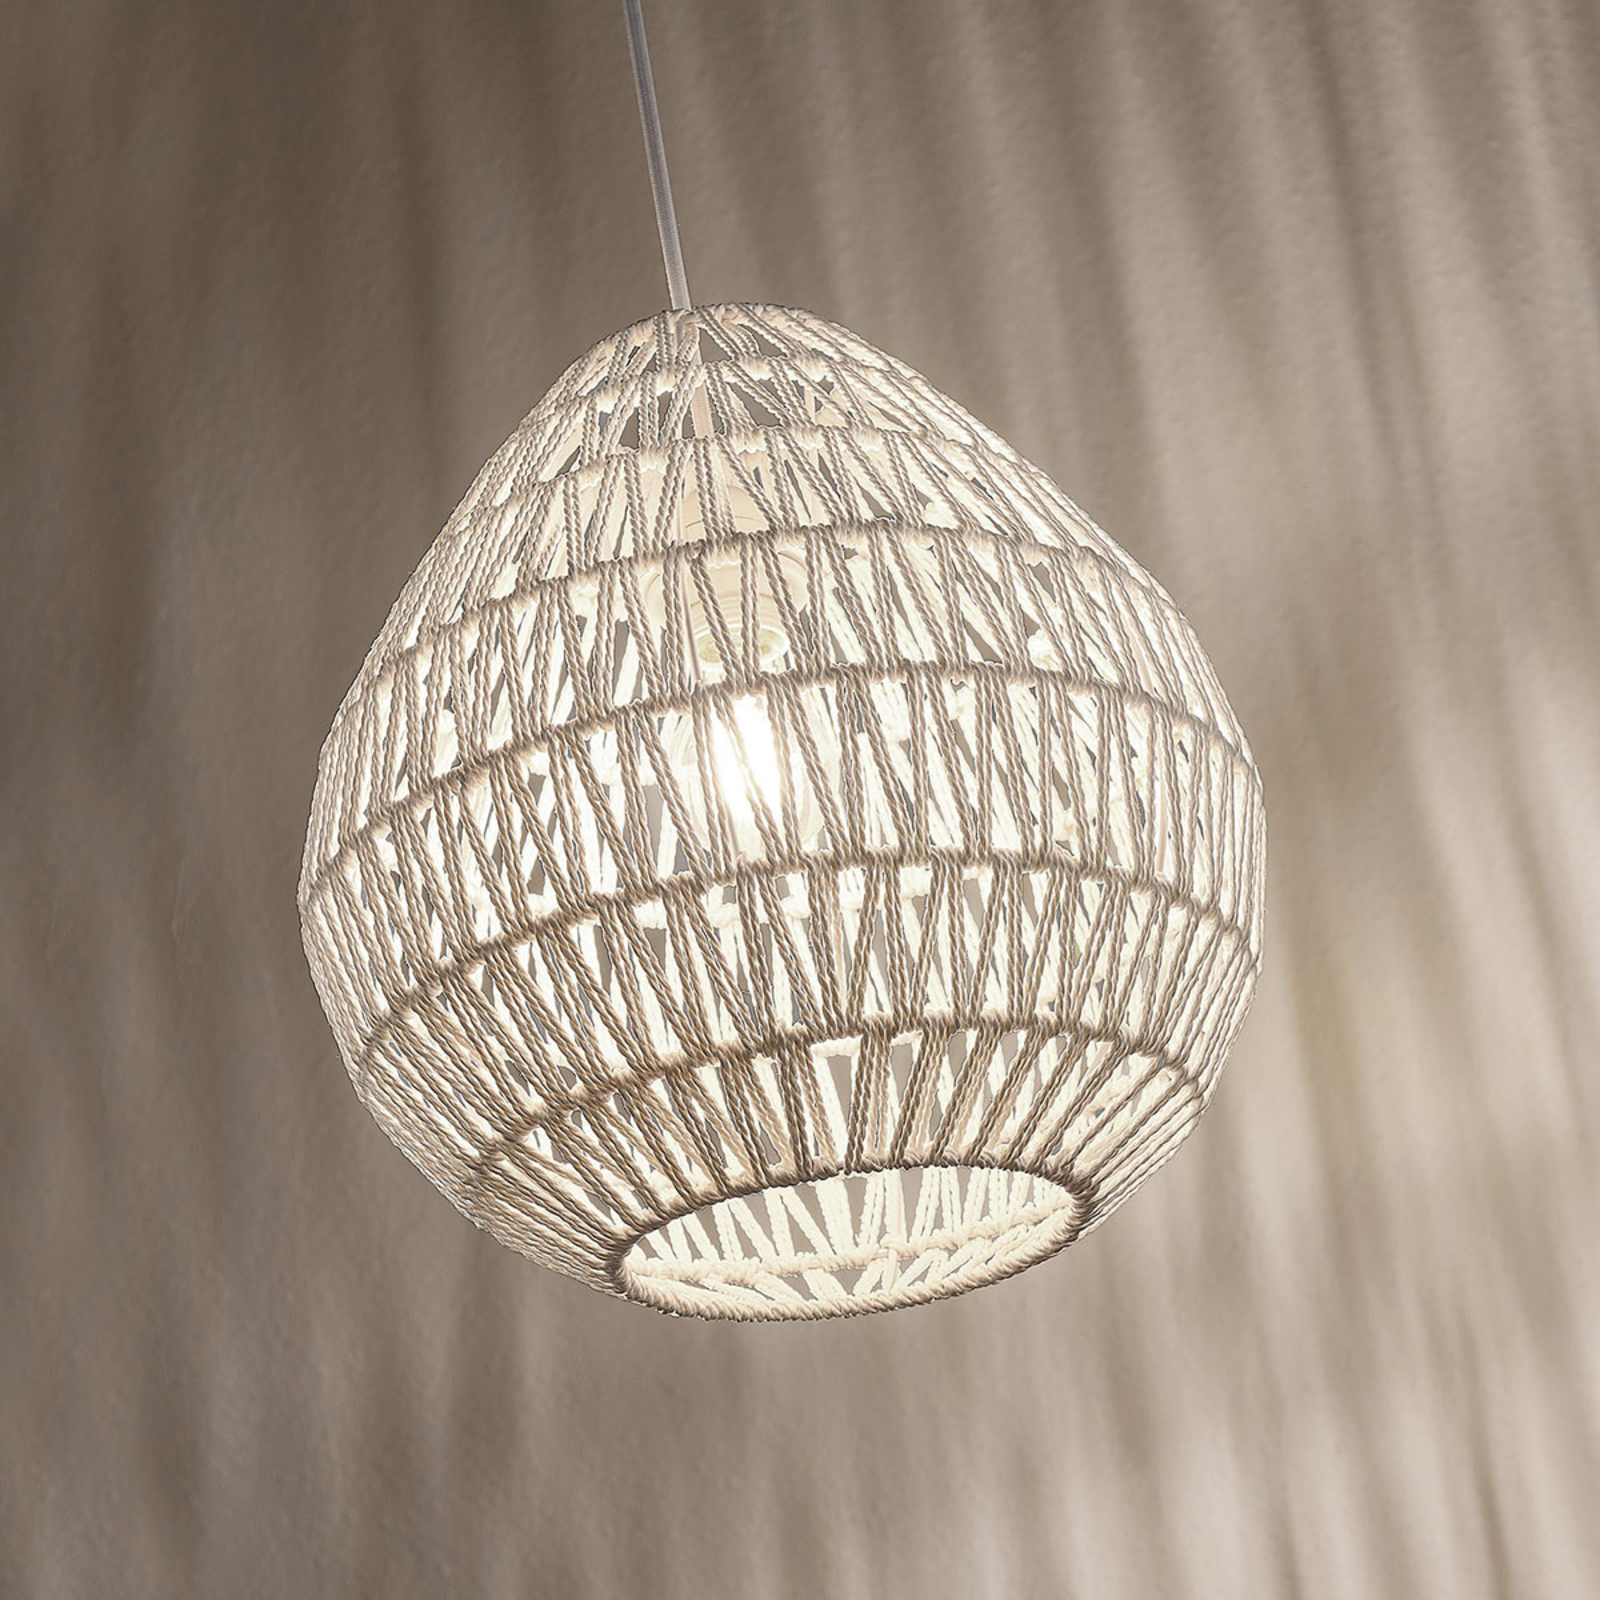 Pendelleuchte Danya Weiß Papiergeflecht Rund Wohnzimmerlampe Lampenwelt E27 60W 